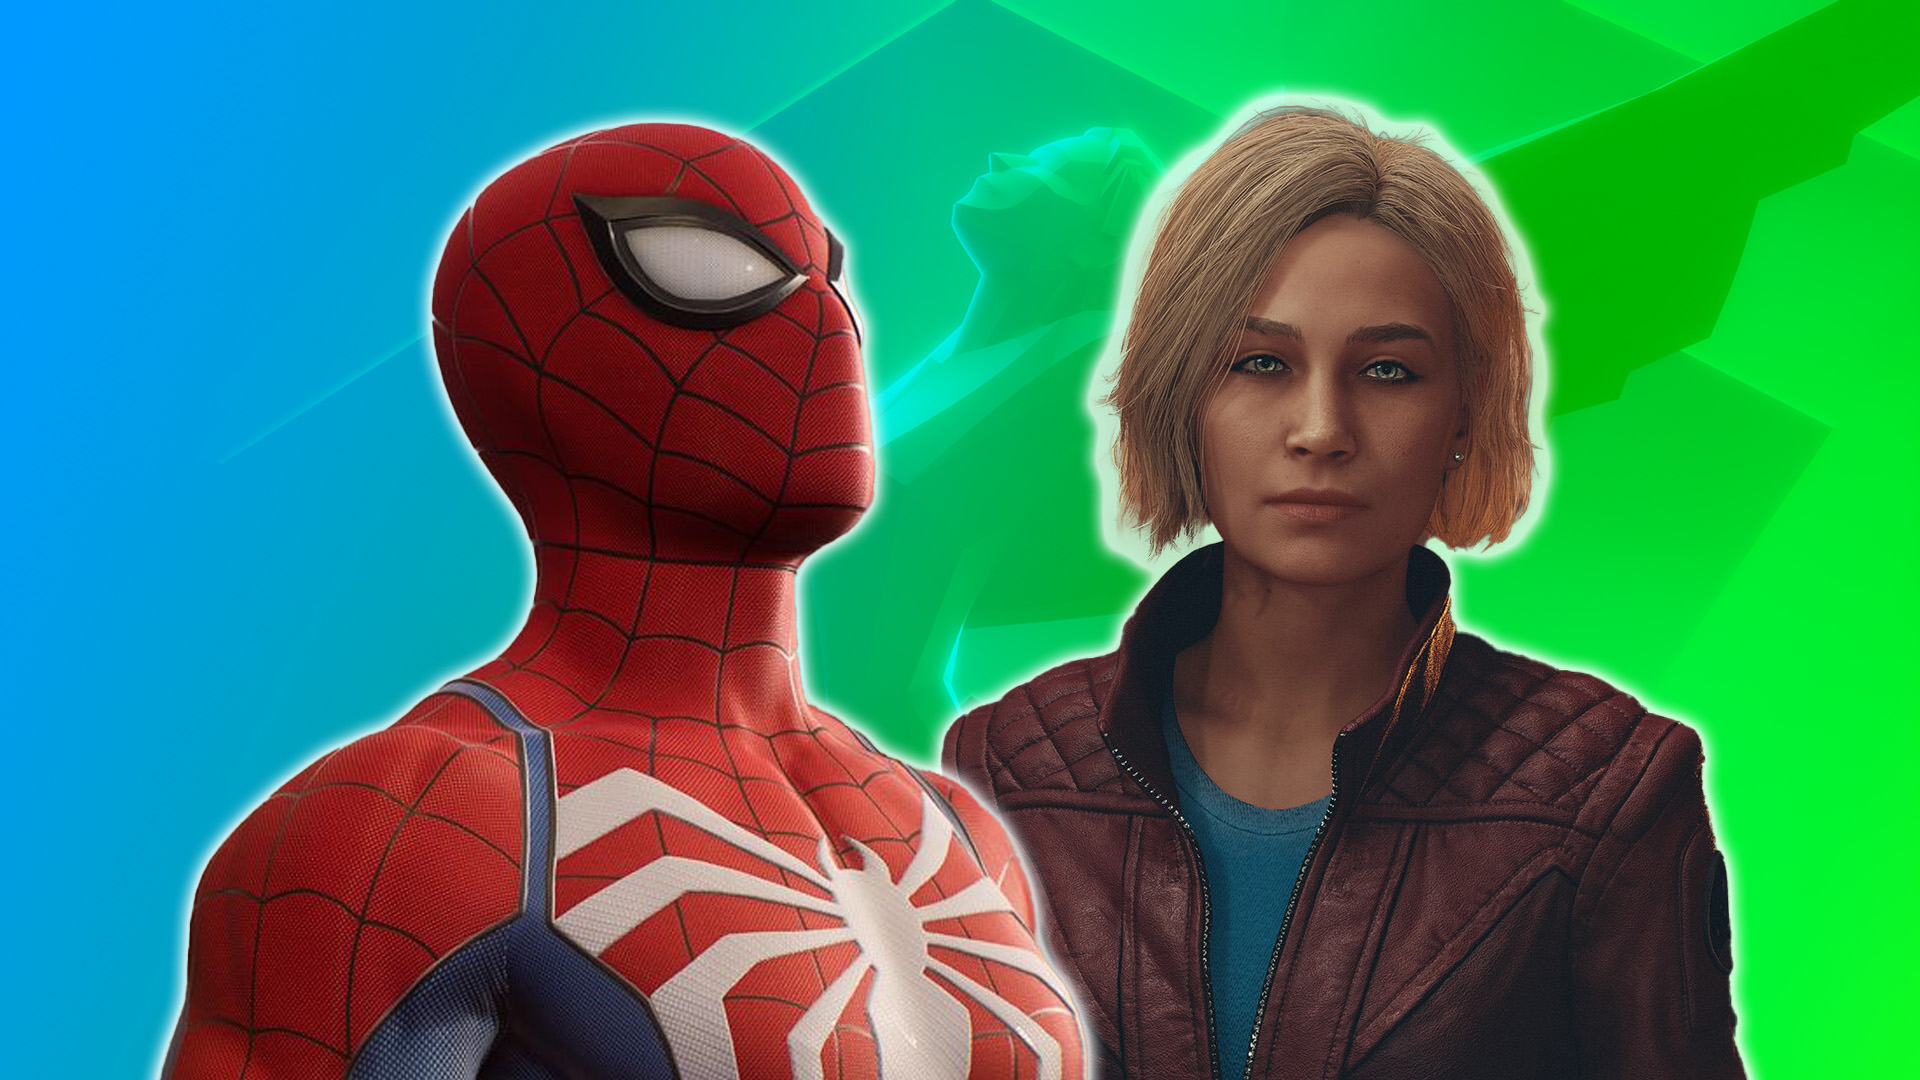 Will Marvel's Spider-Man 2 have DLC? - Dexerto